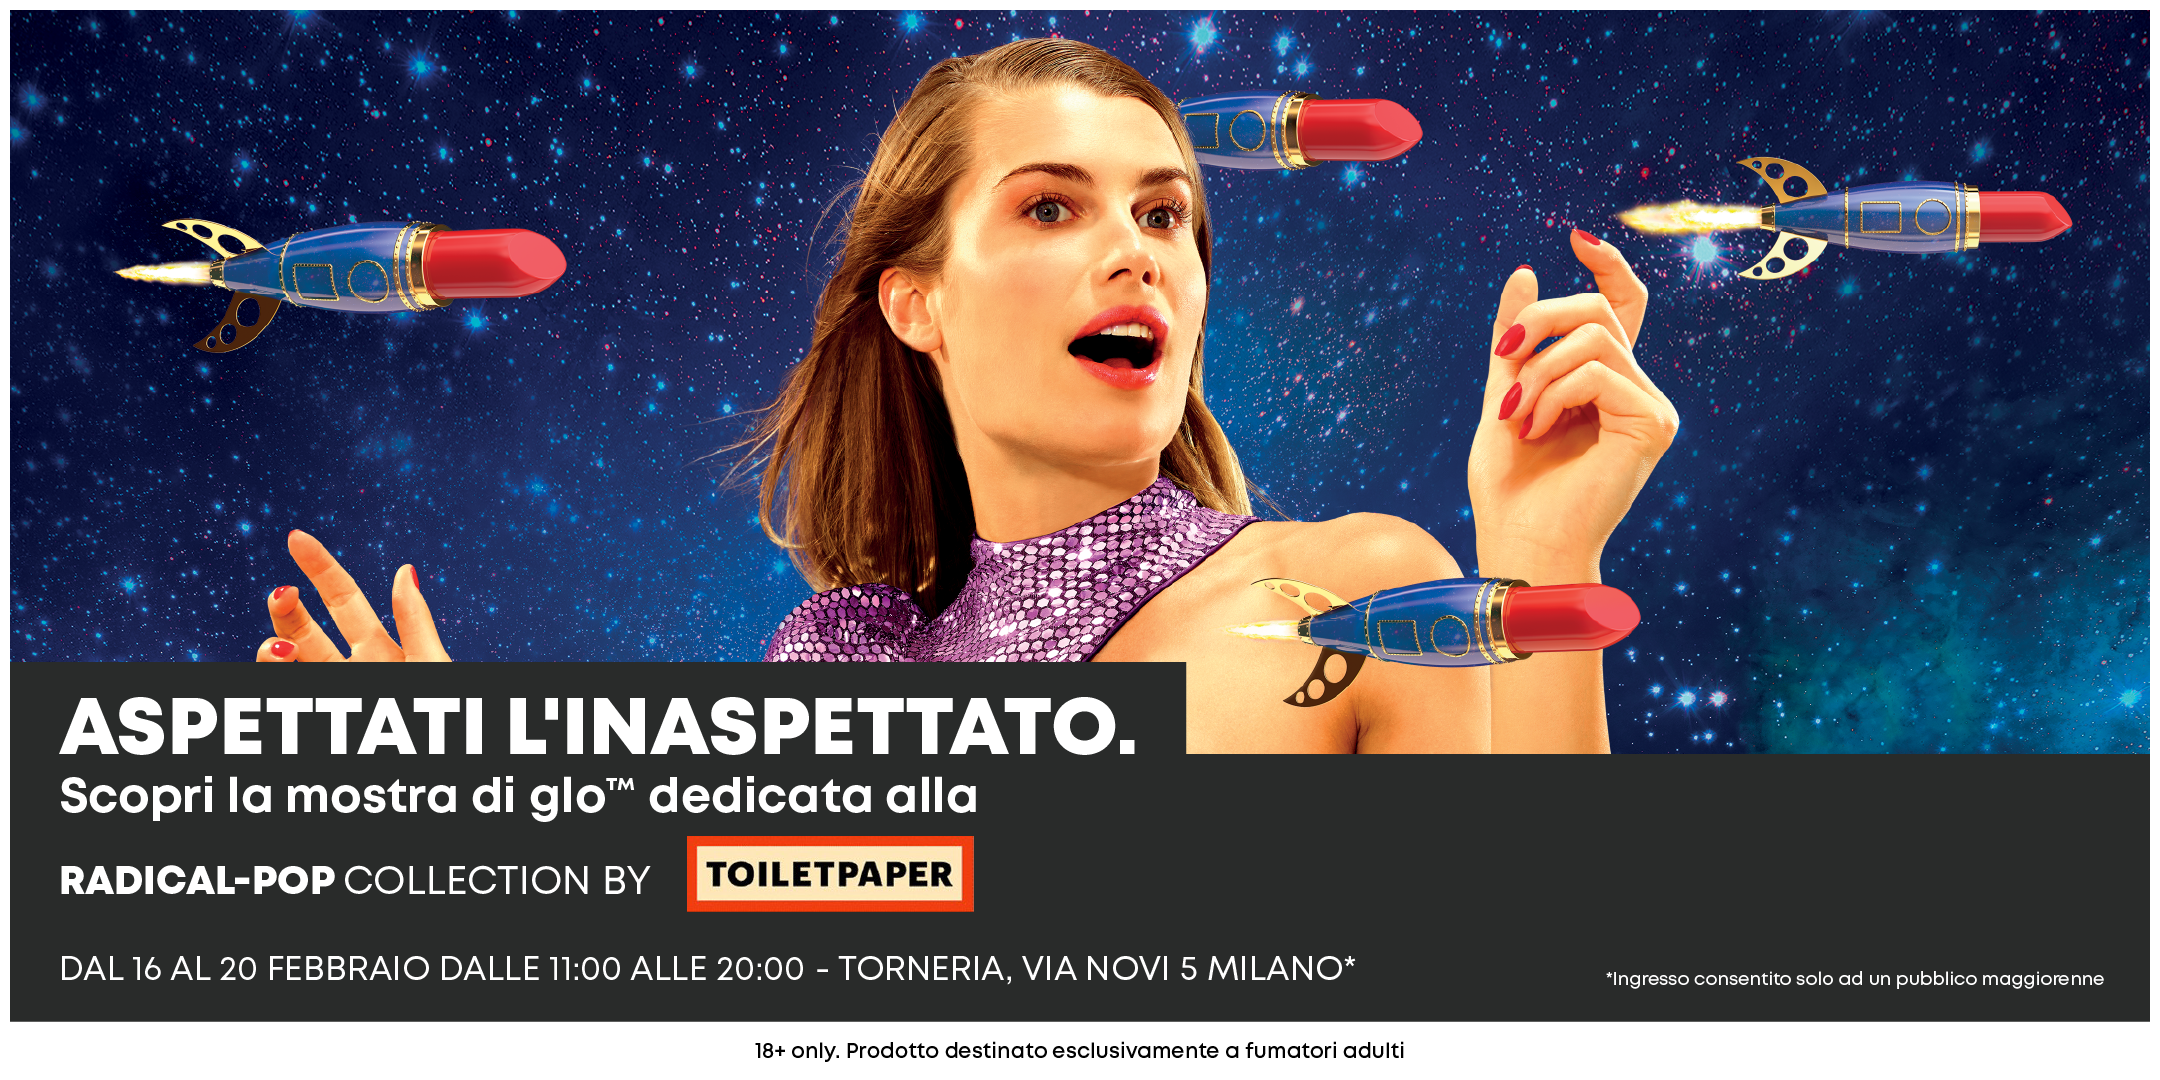 Aspettati l’inaspettato! glo™ e TOILETPAPER insieme presso la Torneria a Milano YOUparti